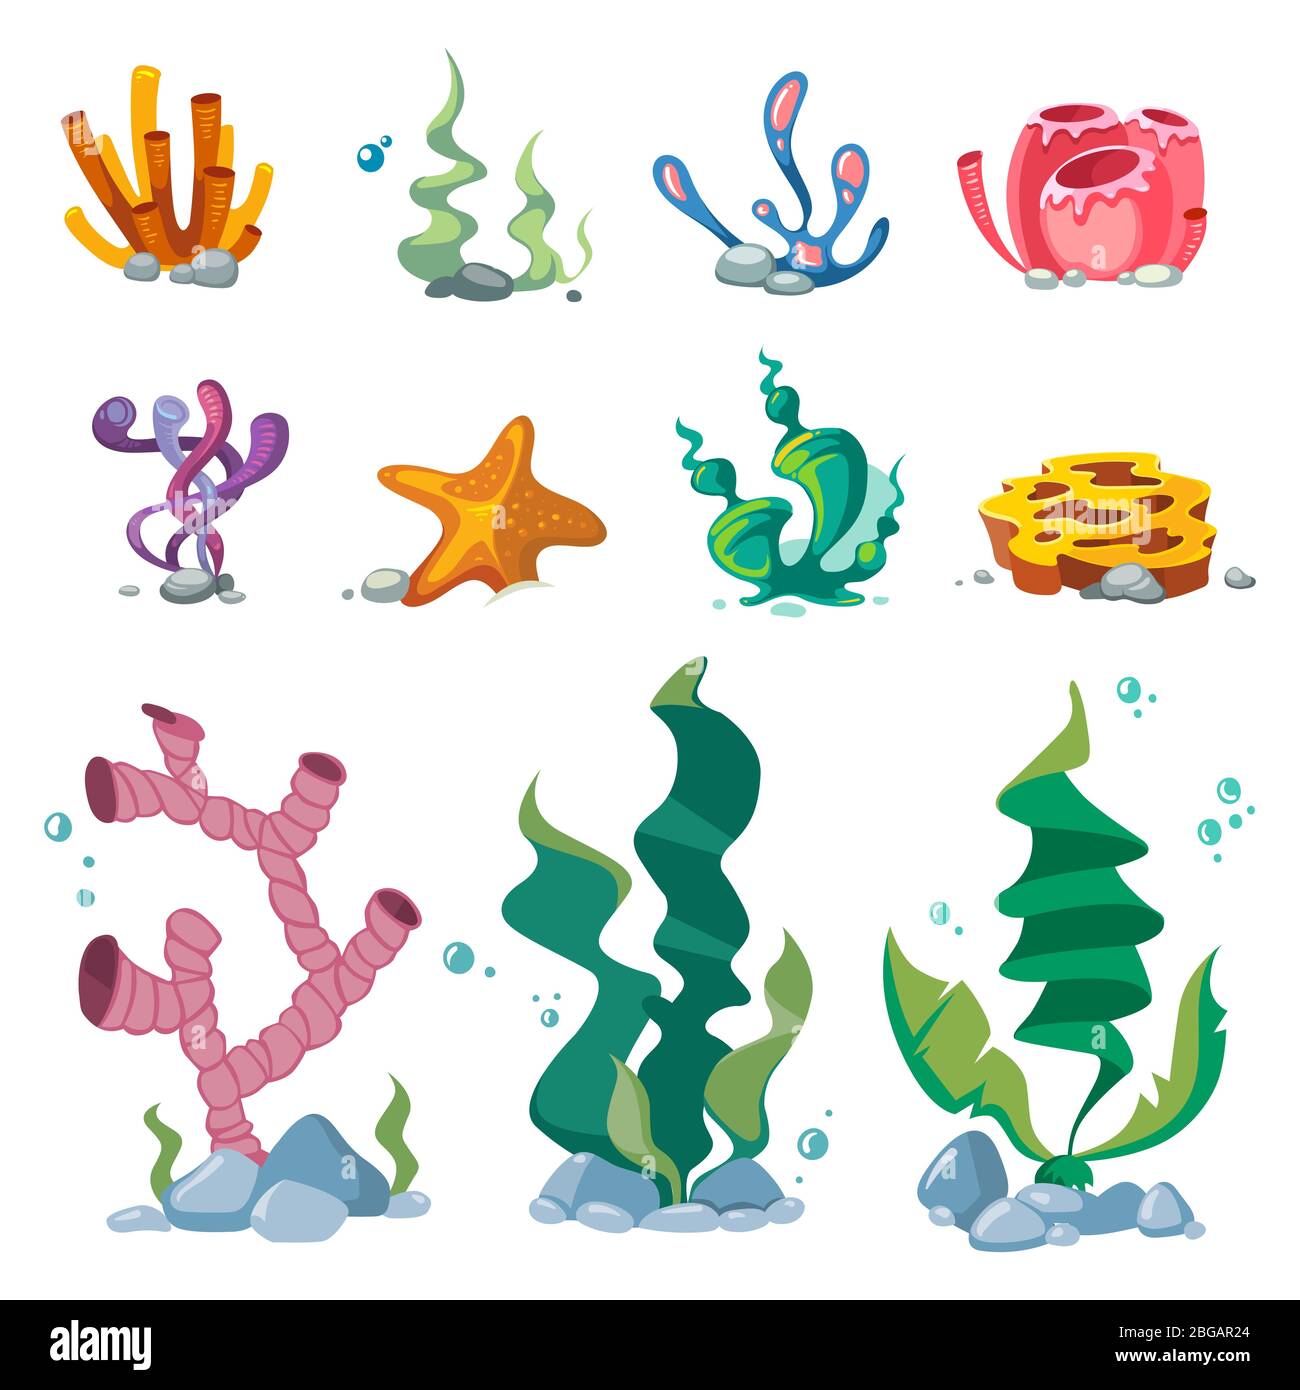 Helle Algen Aquarium Dekoration Cartoon Vektor-Set isoliert auf weißem Hintergrund. Algen für Aquarium, Unterwasser-Wasserflora Illustration Stock Vektor